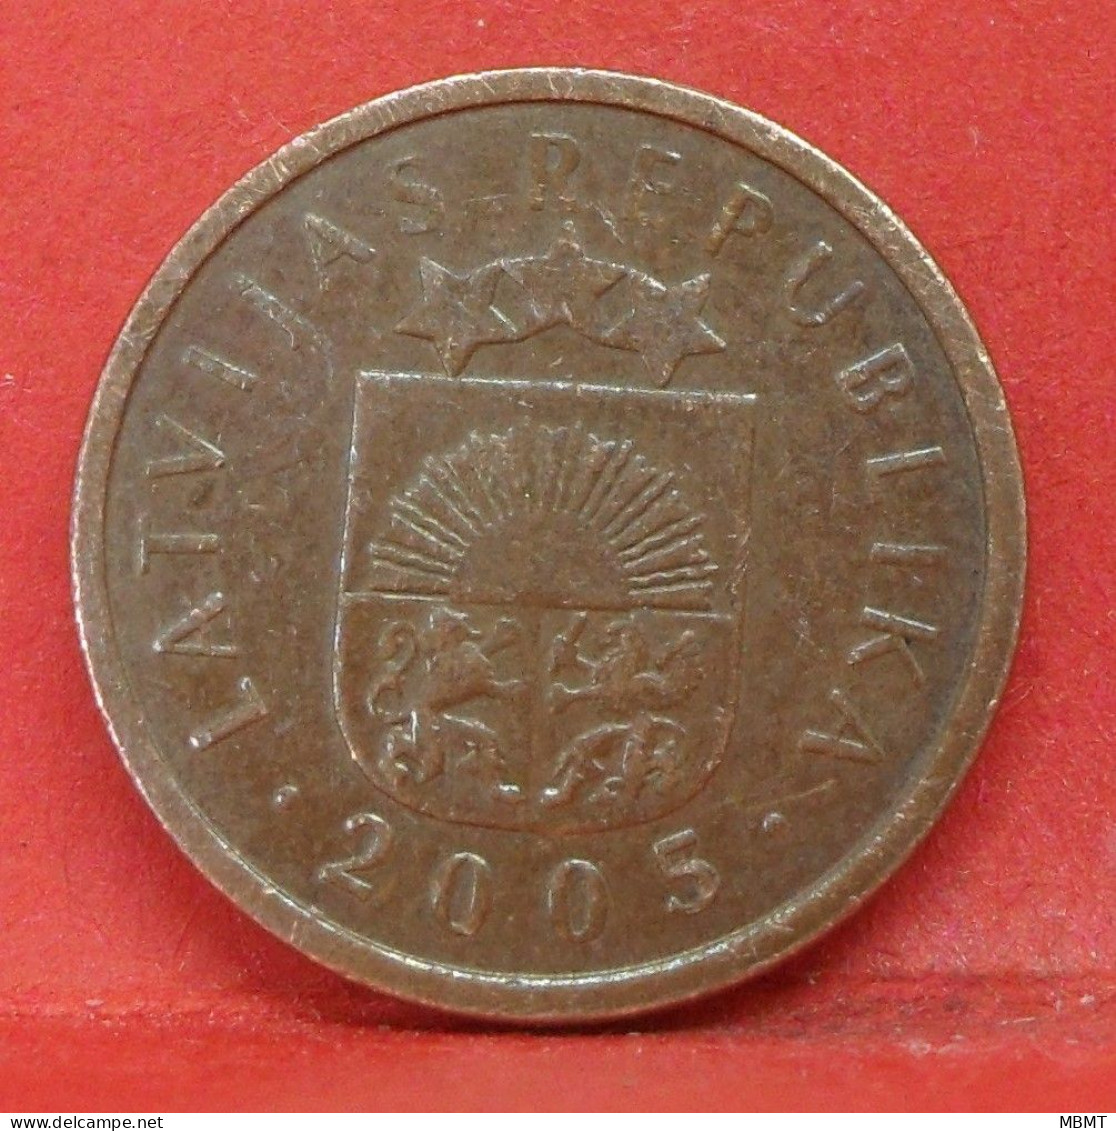 1 Santims 2005 - TTB - Pièce De Monnaie Lettonie - Article N°3632 - Letland